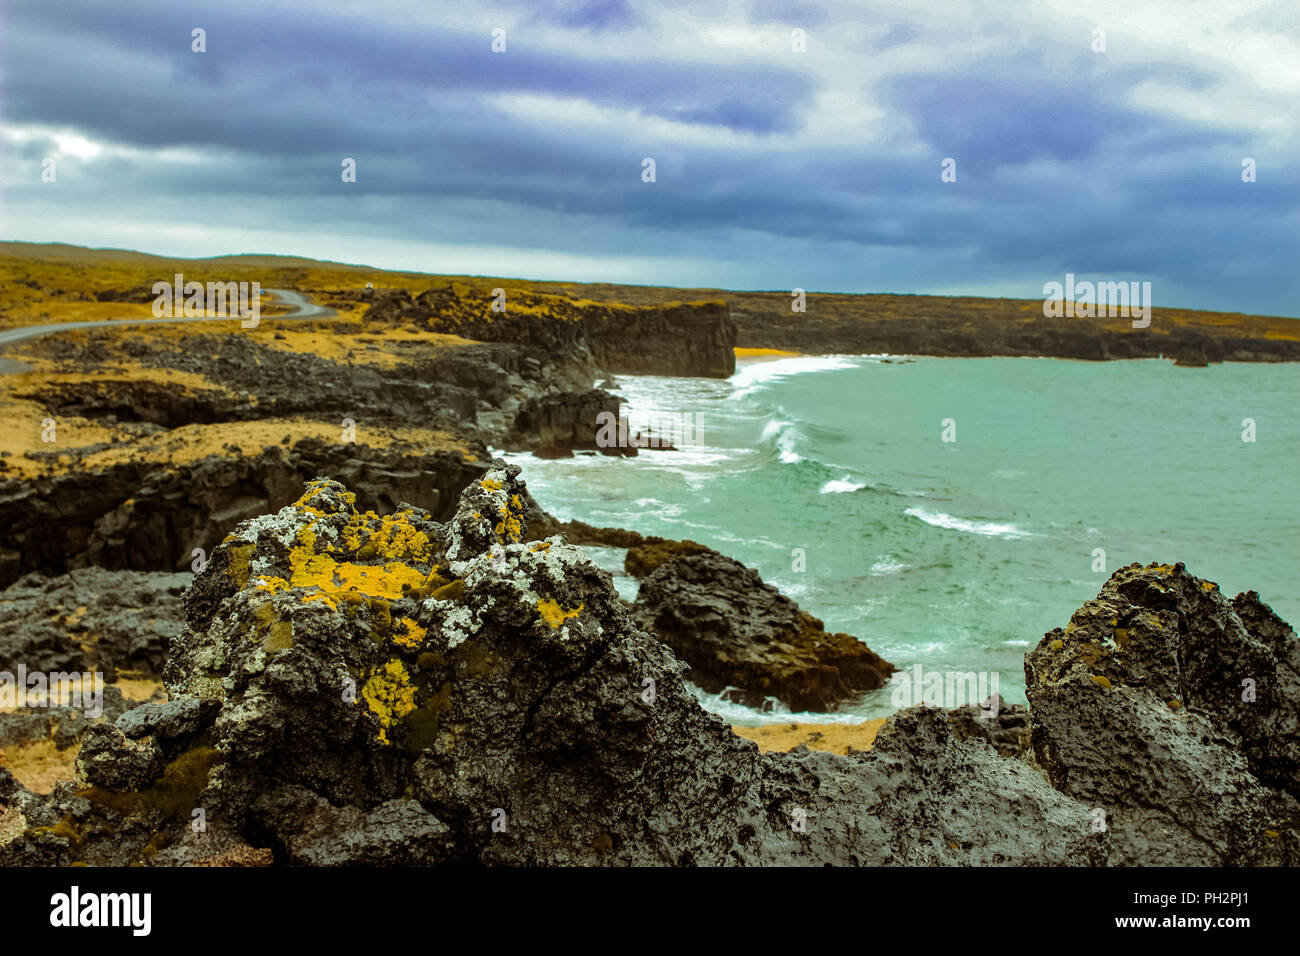 Penisola snaefellsnes nella costa occidentale di Islanda, noto per il paesaggio idilliaco e roccia vulcanica Foto Stock